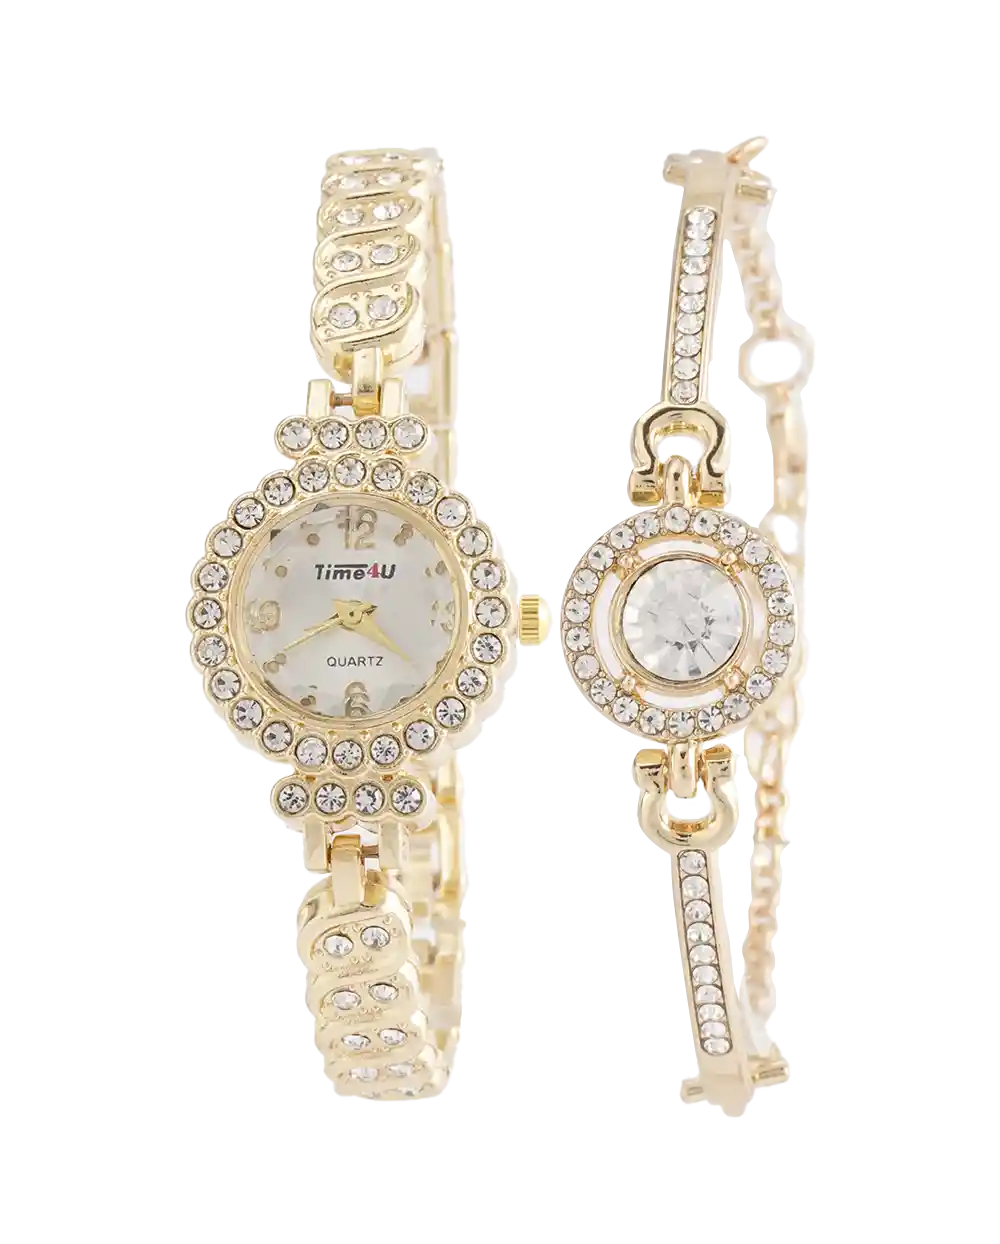 خرید ست ساعت مچی و دستبند زنانه TIME4U مدل 1963 رنگ طلایی همراه با دستبند دخترانه استیل رنگ ثابت بهترین قیمت به همراه ارسال رایگان و جعبه